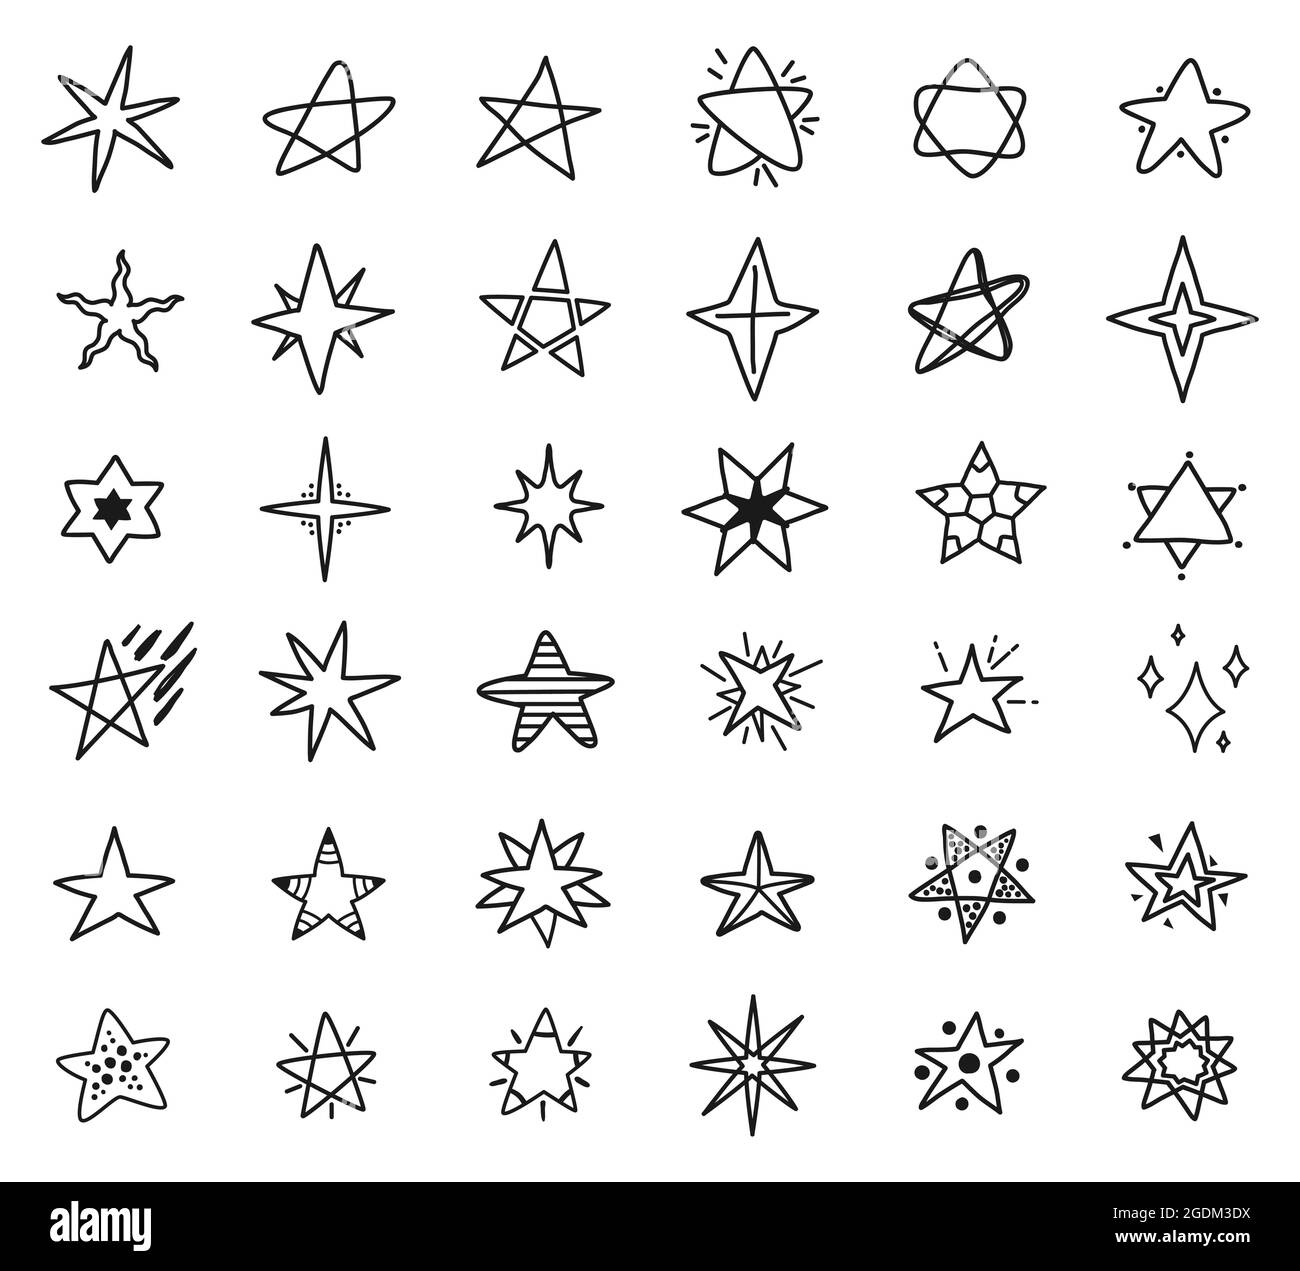 Disegni a stelle, disegni a stelle disegnati a mano. Semplici stelle carine, scintille o elementi Starburst per i bambini tessili o pattern vettoriali set. Gli oggetti cosmici delineano forme diverse Illustrazione Vettoriale